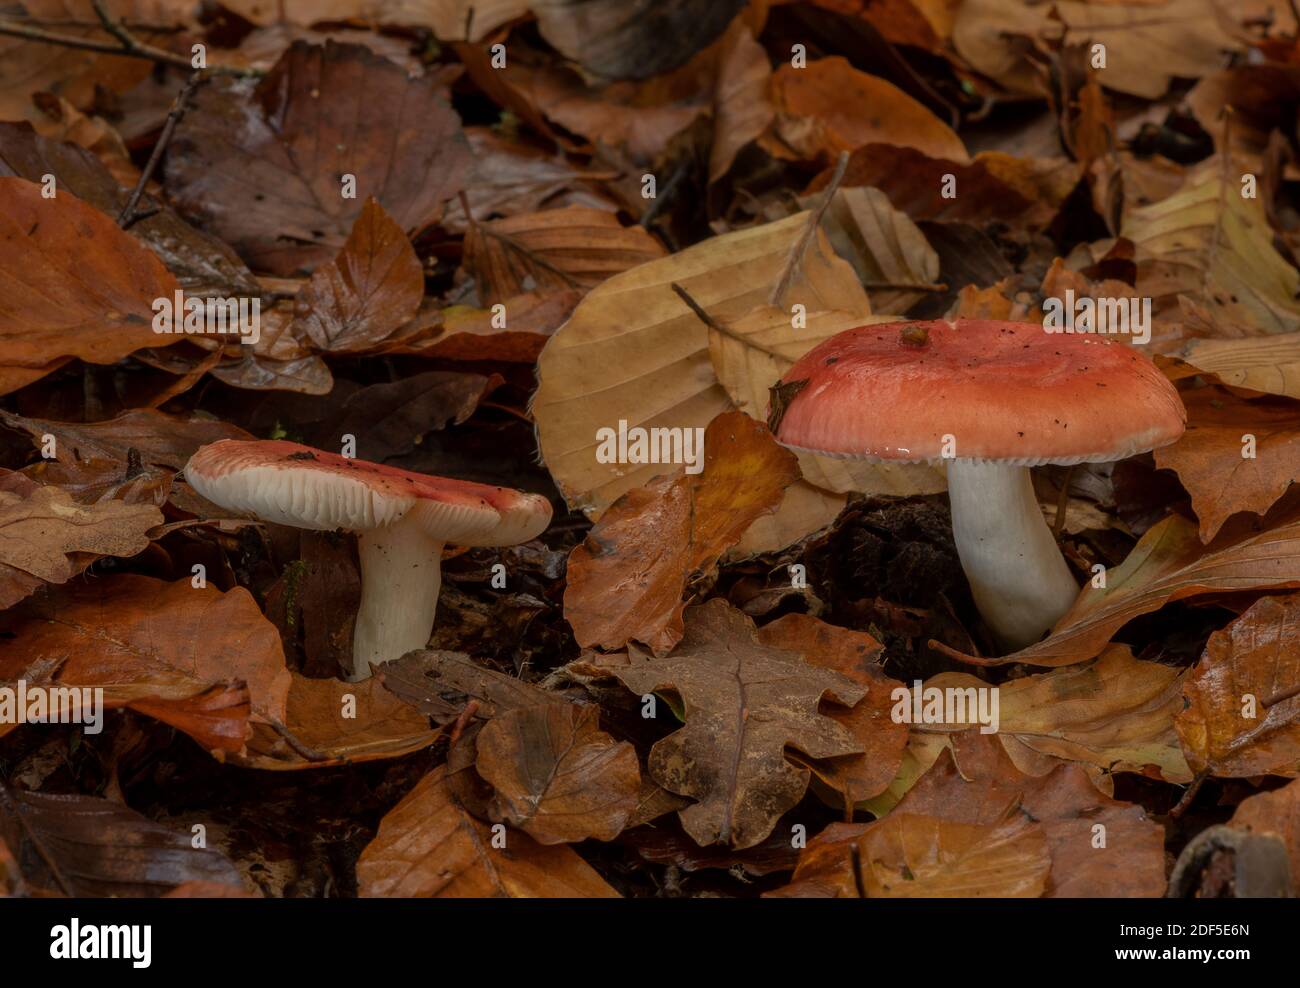 Falce di legno di faggio, Russula nobilis, funghi tra le lettiere di foglie in vecchio legno di faggio, New Forest. Foto Stock